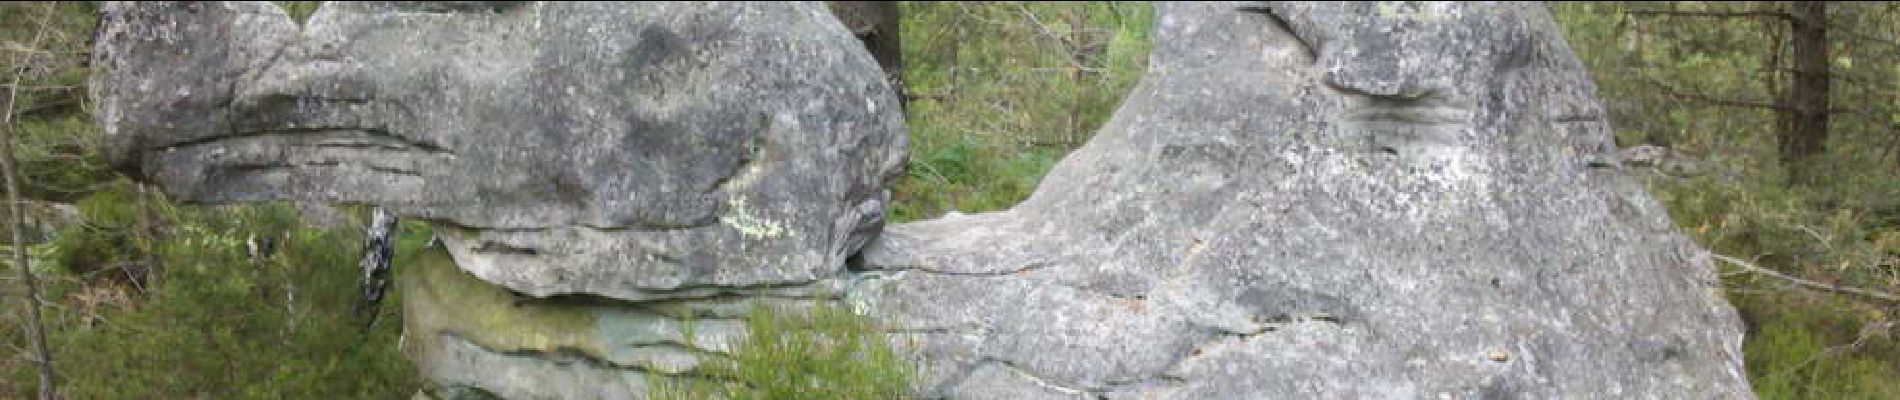 POI Fontainebleau - 18 - Un dromadaire fossilisé - Photo